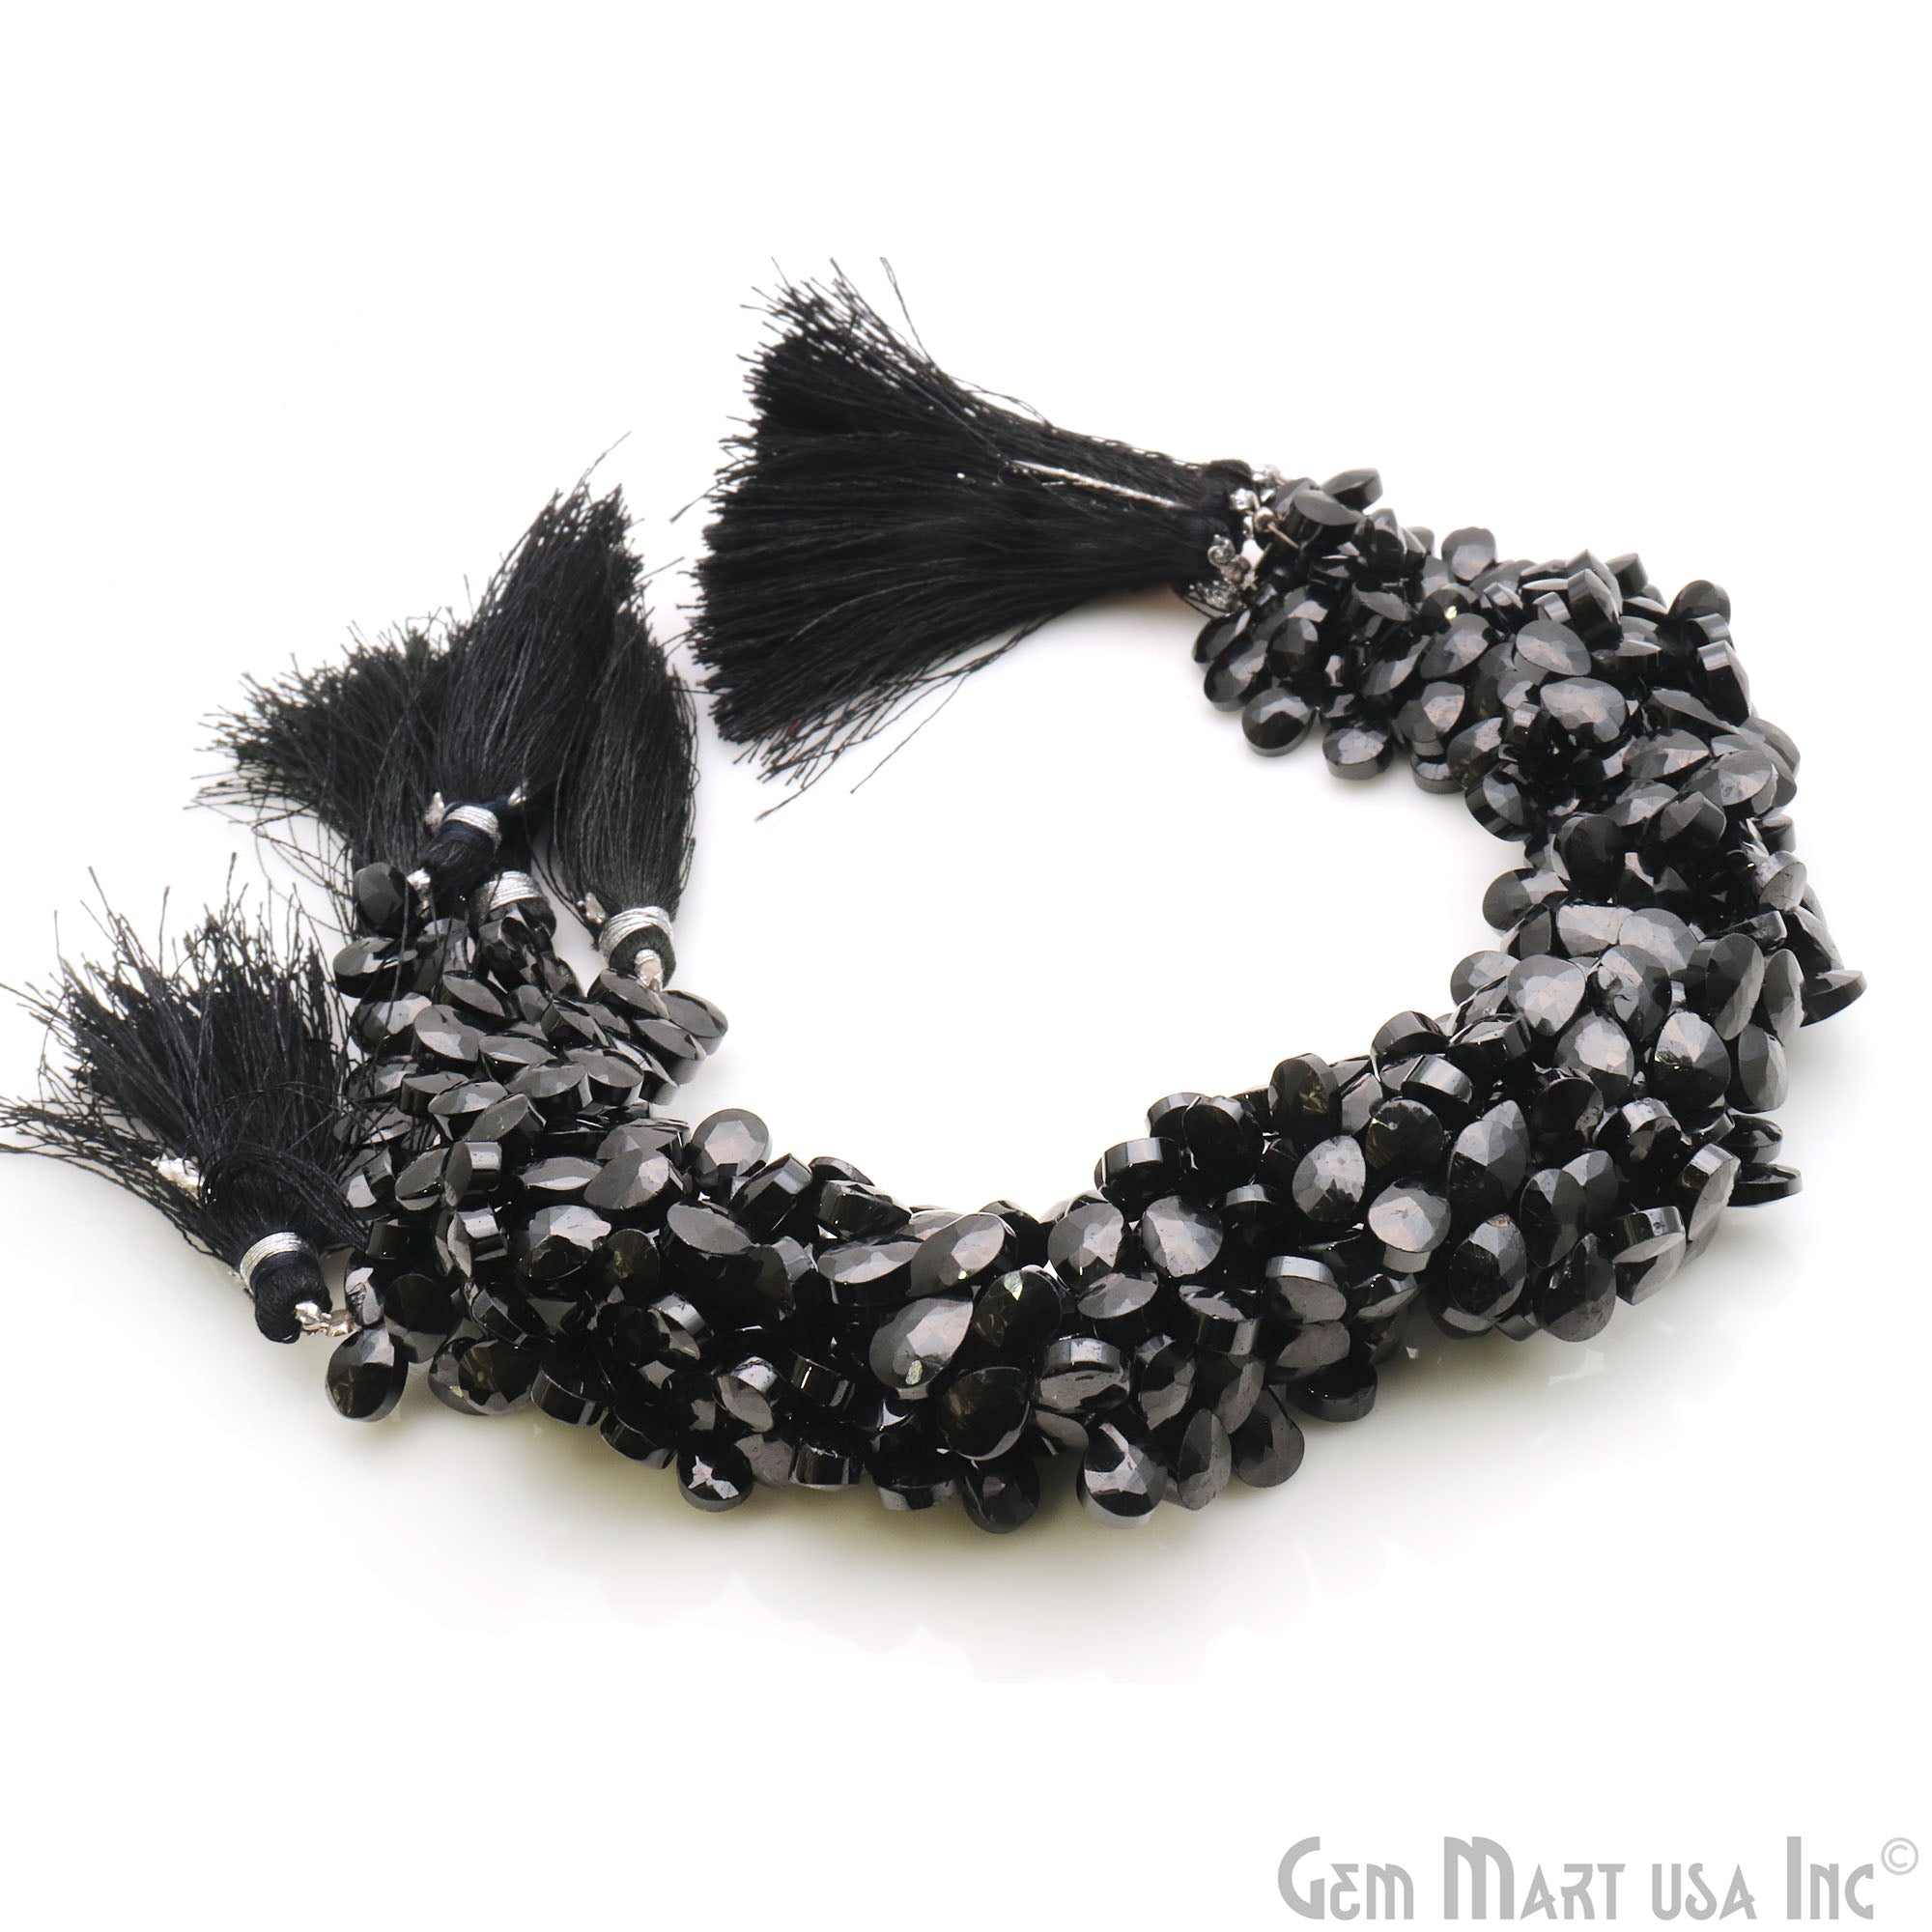 Black Spinel Briolette Faceted Gemstone 8x6mm Rondelle Beads - GemMartUSA